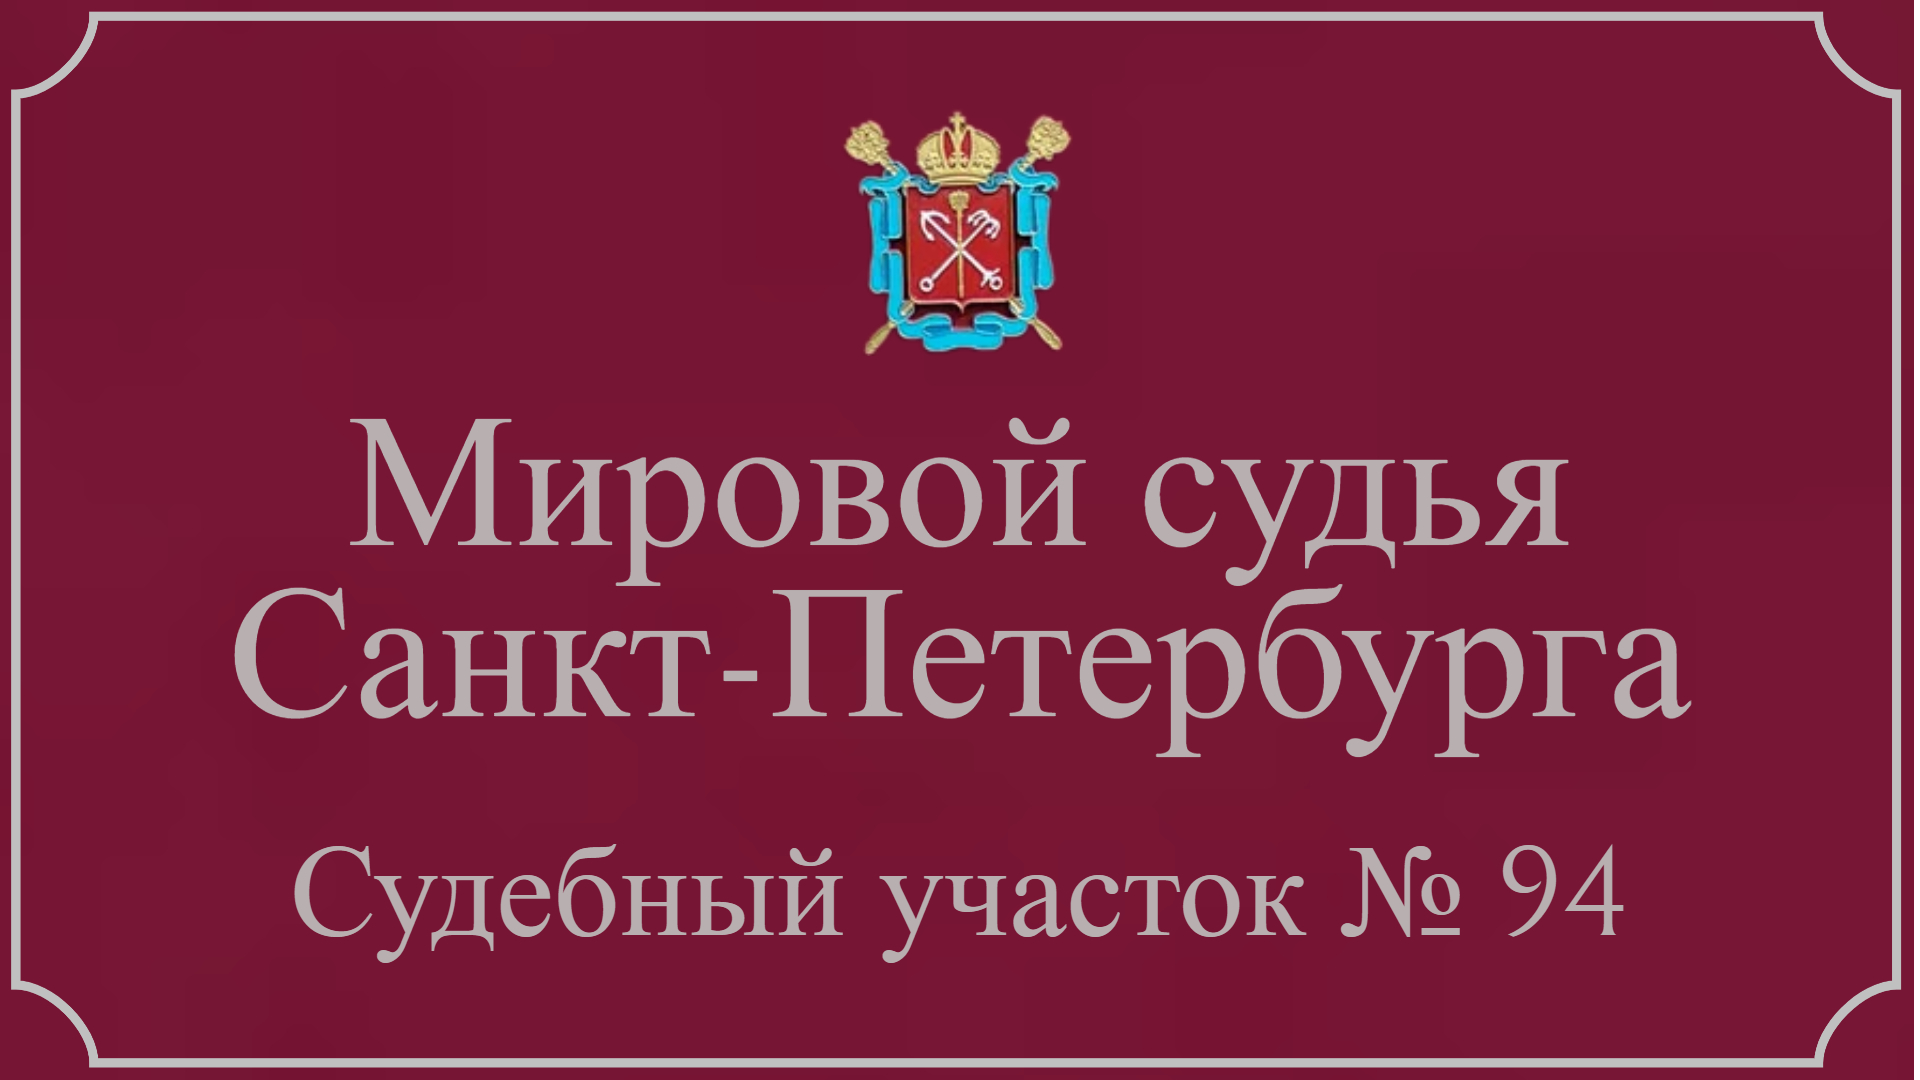 Информация по 94 судебному участку в Санкт-Петербурге.